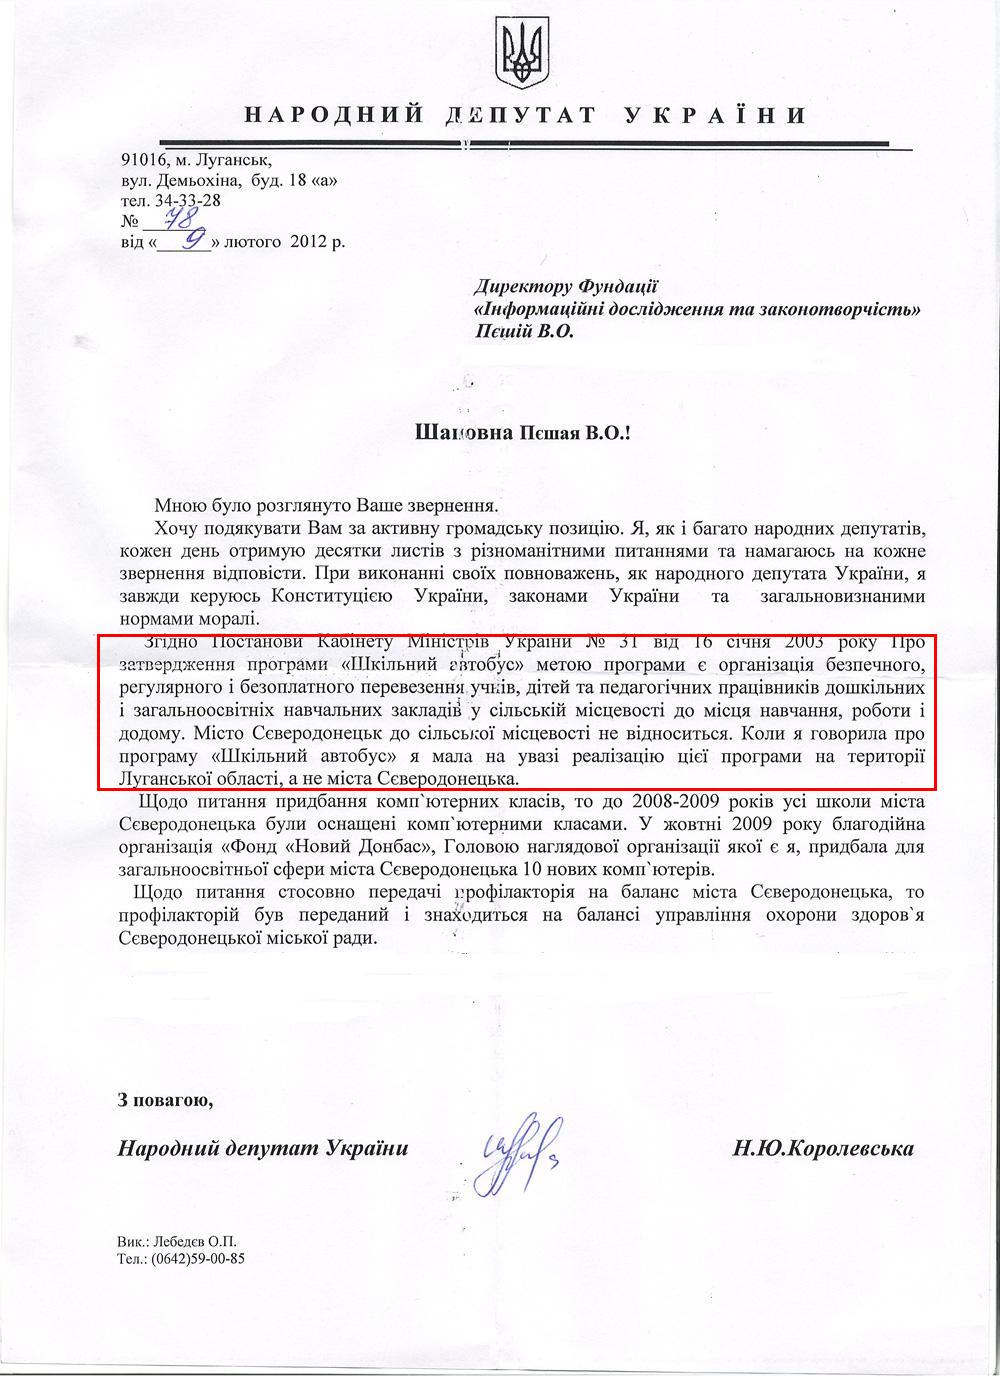 Письмо народного депутата Украины Н.Ю.Королевской